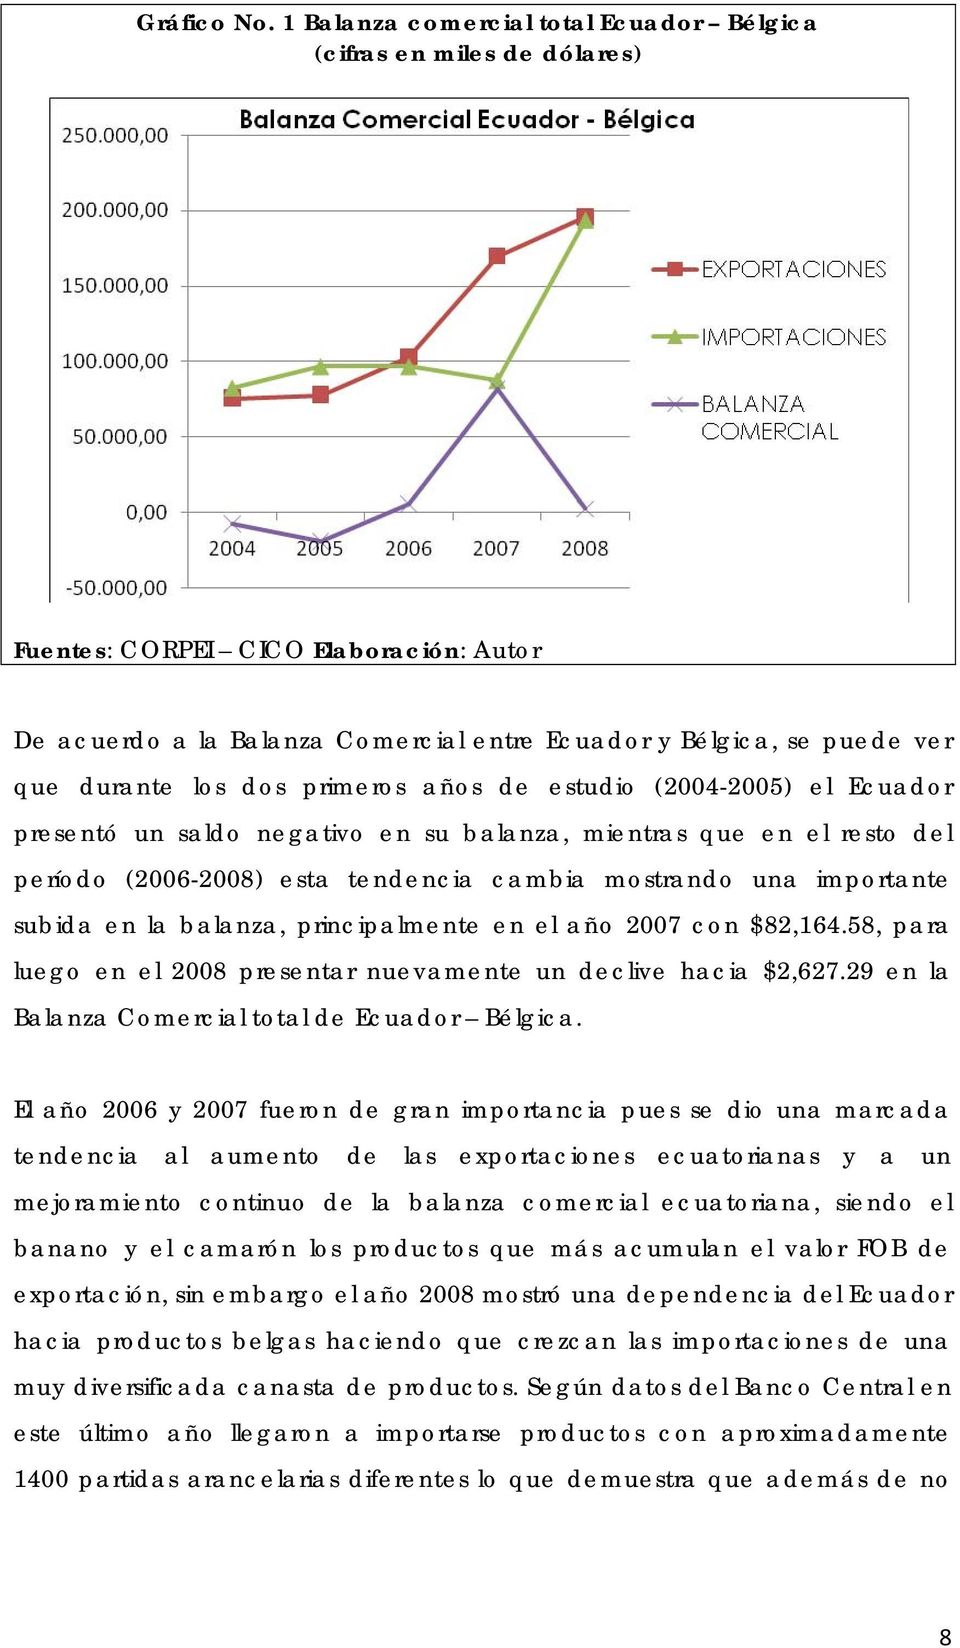 dos primeros años de estudio (2004-2005) el Ecuador presentó un saldo negativo en su balanza, mientras que en el resto del período (2006-2008) esta tendencia cambia mostrando una importante subida en